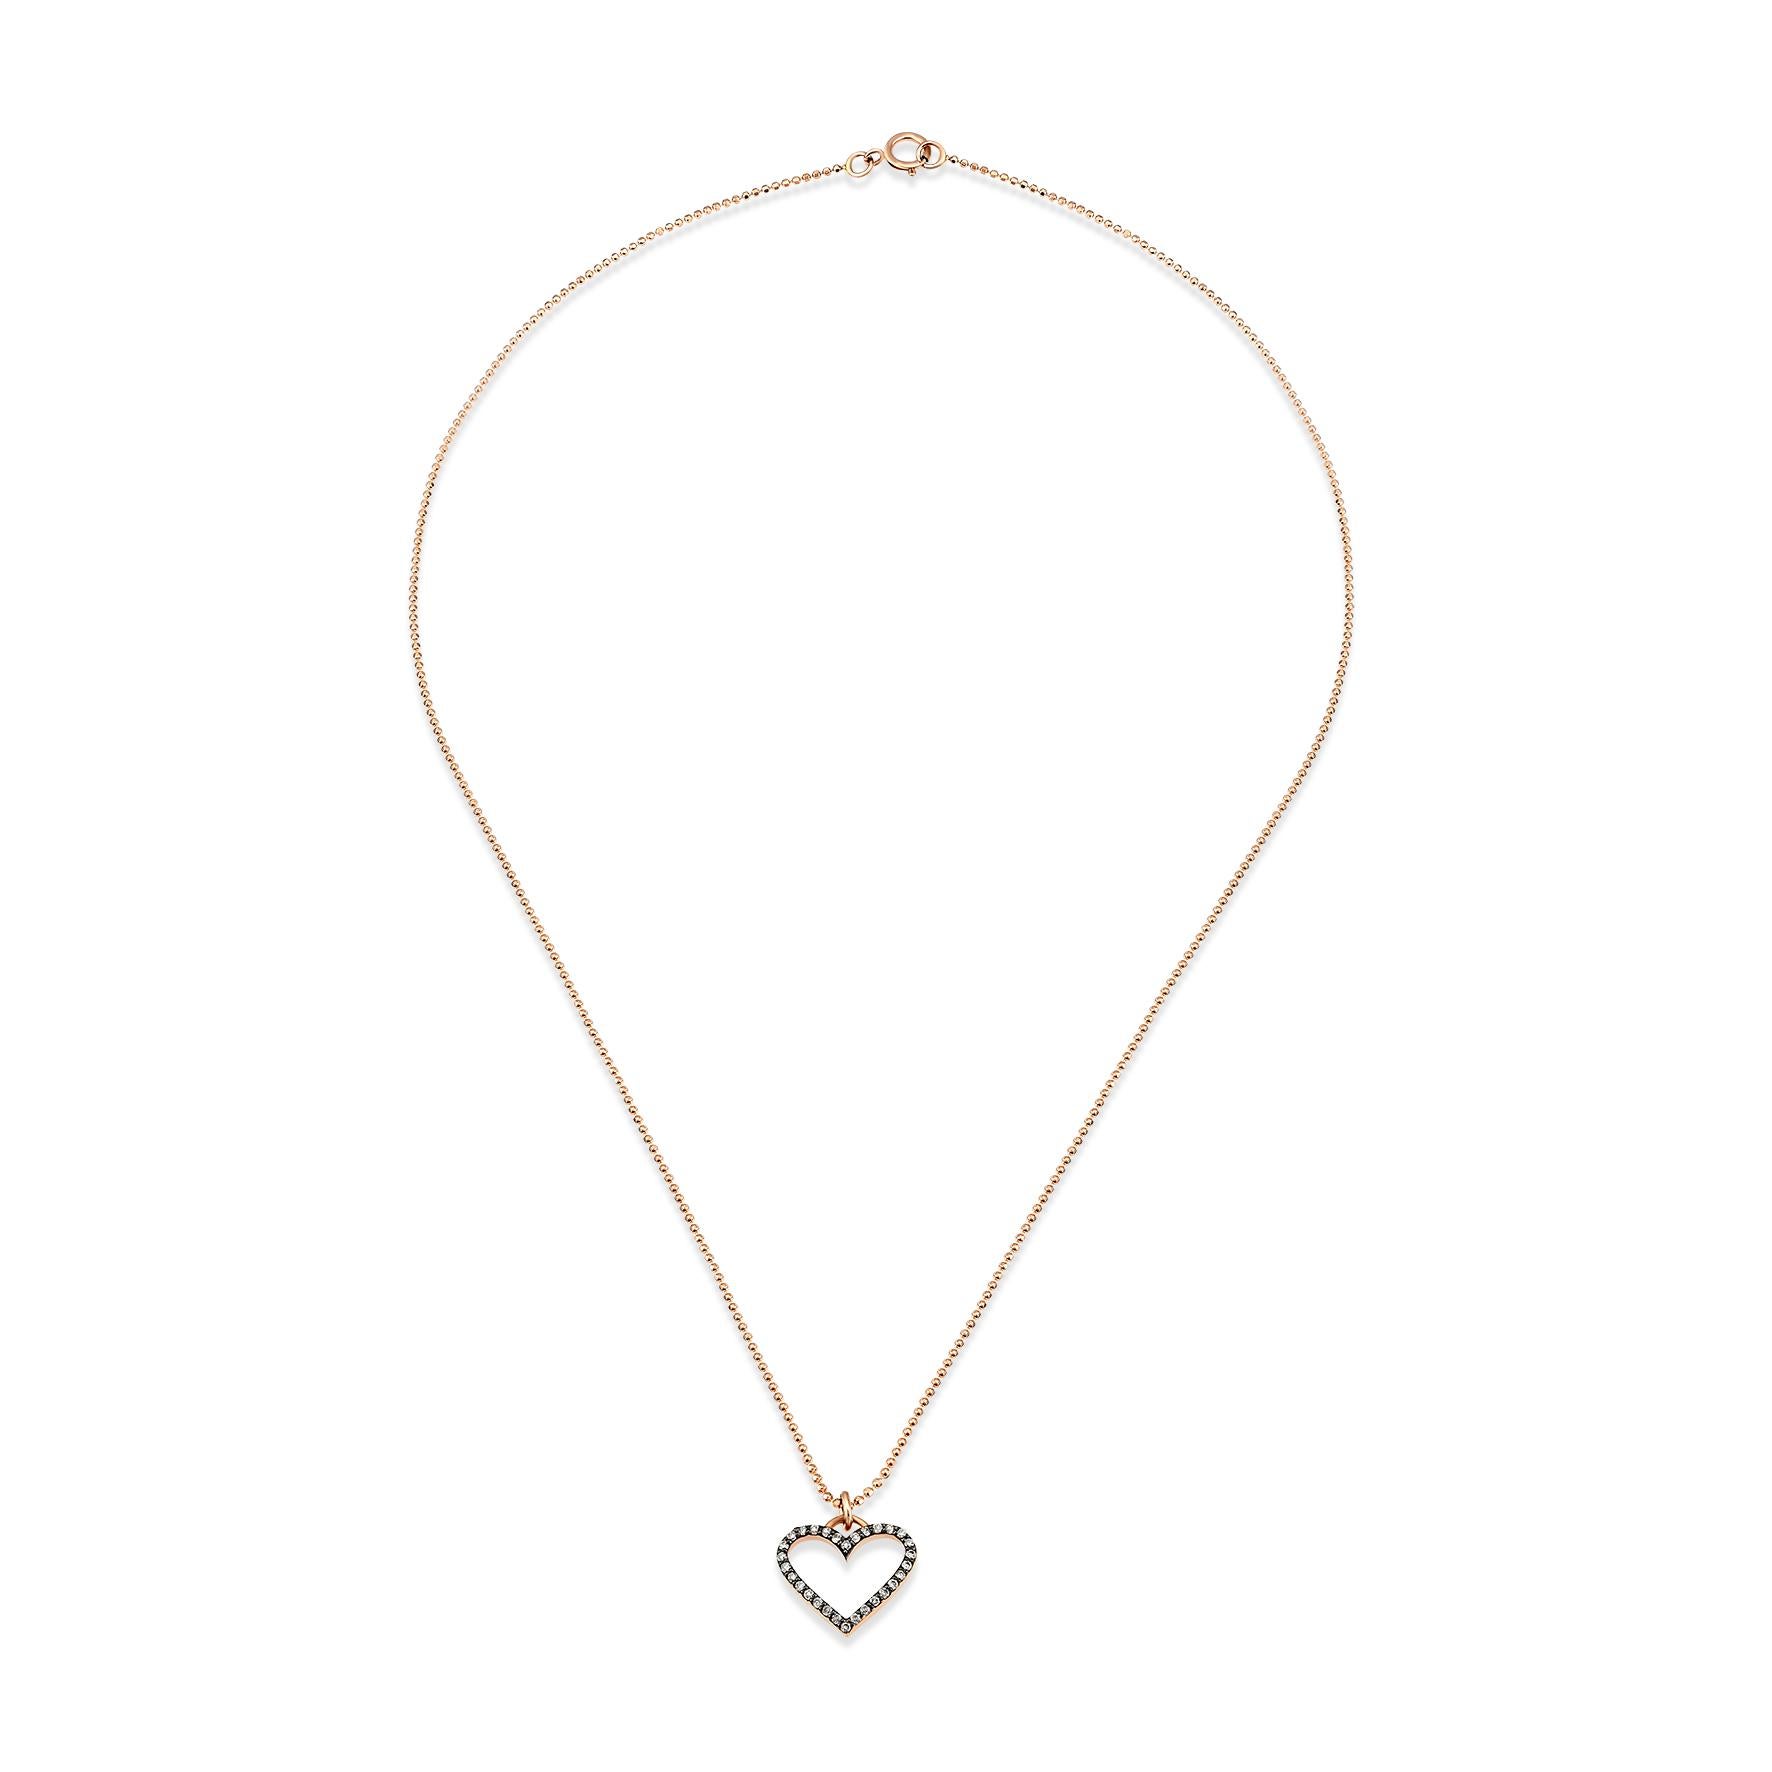 Collier coeur en or rose 14k avec diamant blanc 0,15ct par Selda Jewellery

Informations complémentaires:-
Collection : Collection 